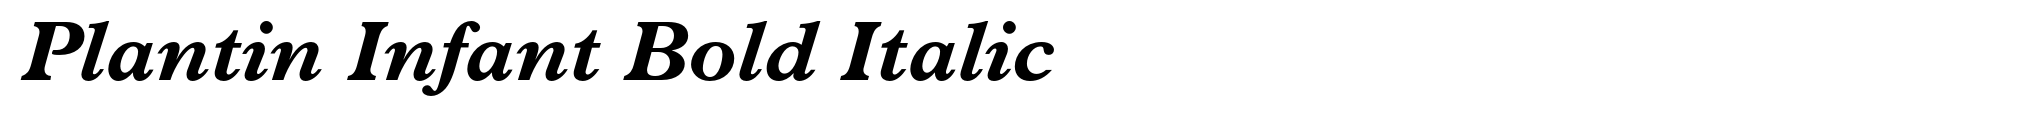 Plantin Infant Bold Italic image